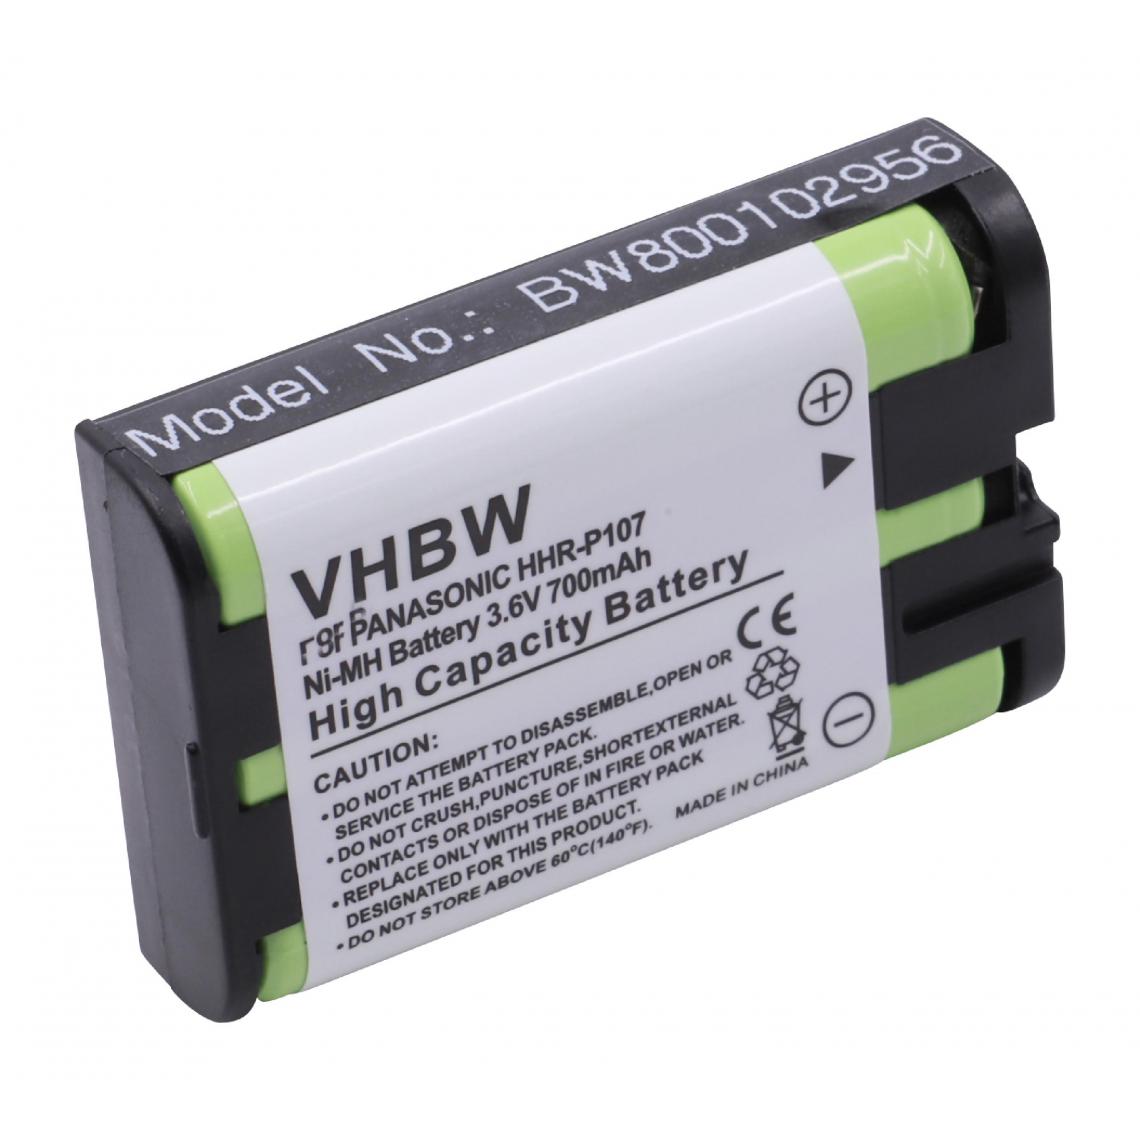 Vhbw - vhbw NiMH batterie 700mAh (3.6V) pour téléphone fixe sans fil Panasonic KX-TG6026, KX-TG602x, KX-TG6031, KX-TG6032, KX-TG6033, KX-TG6034 - Batterie téléphone